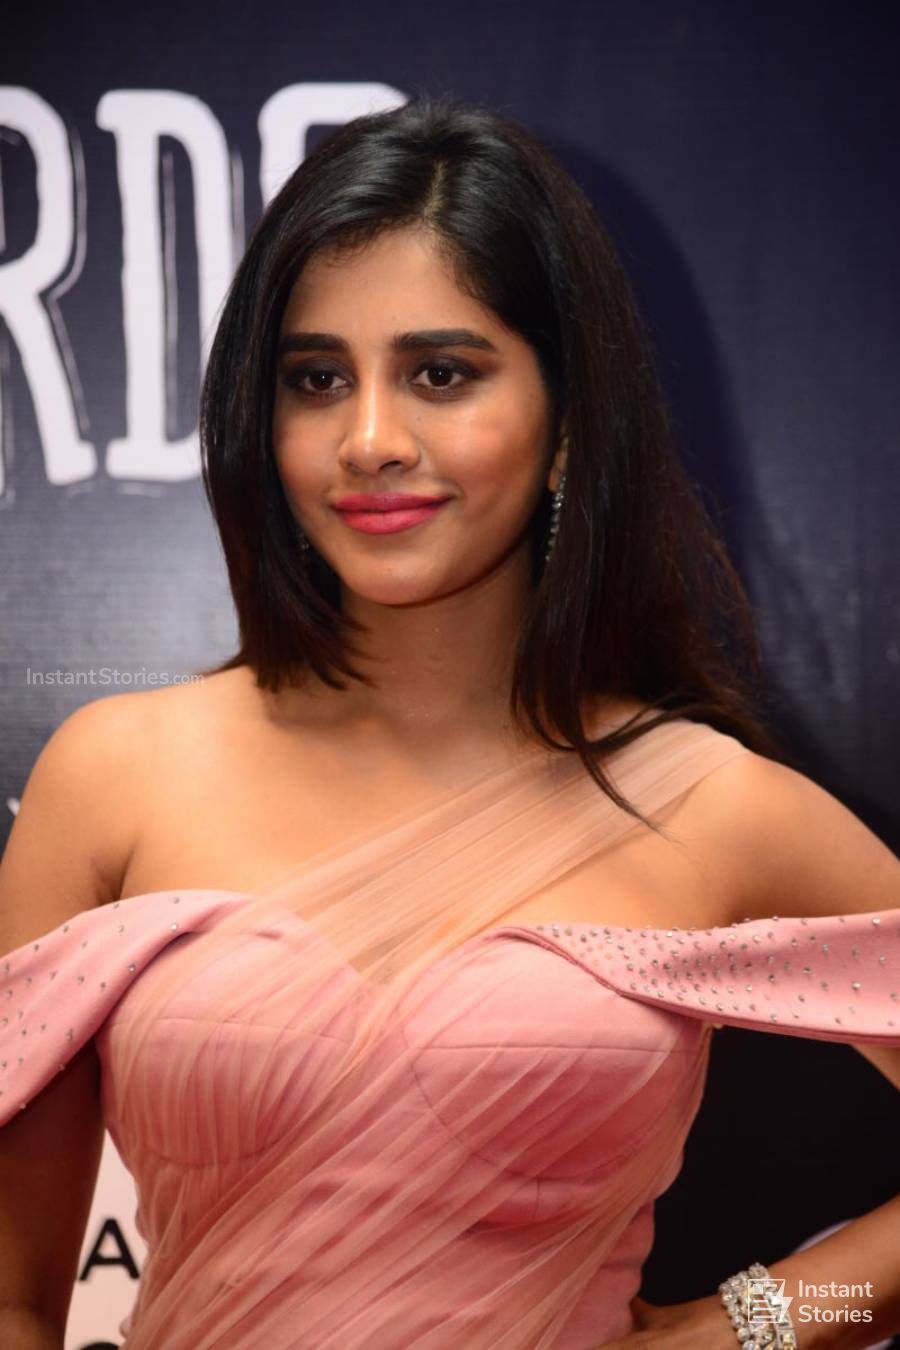 Nabha Natesh Hot Photos in Pink Dress at Dadasaheb Phalke Awards Event (9565) - Nabha Natesh